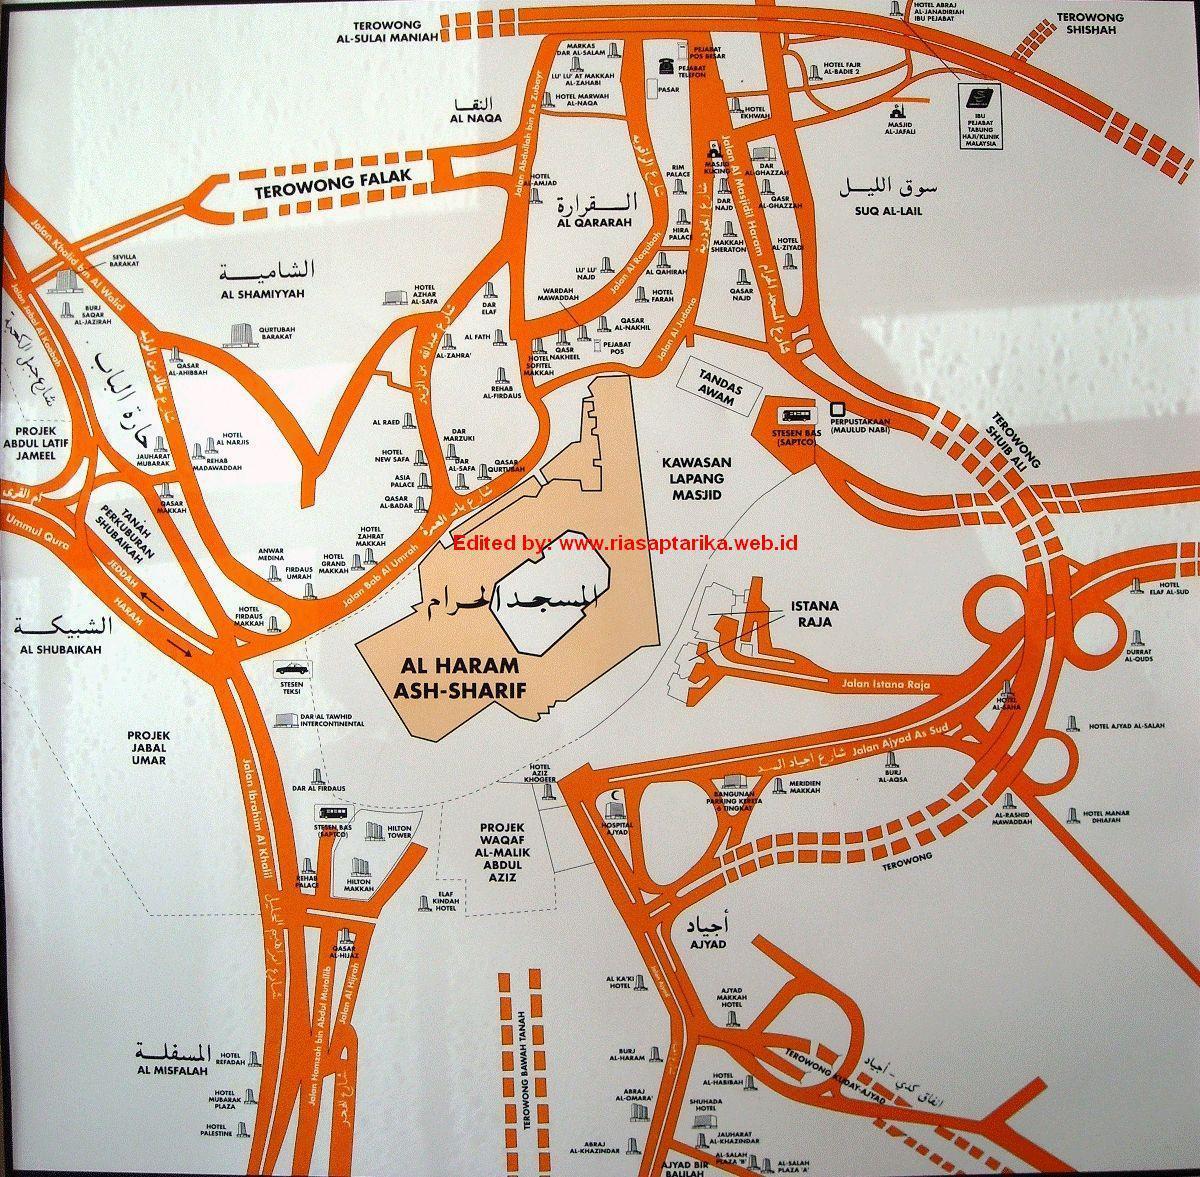 χάρτης της misfalah Μέκκα εμφάνιση χάρτη